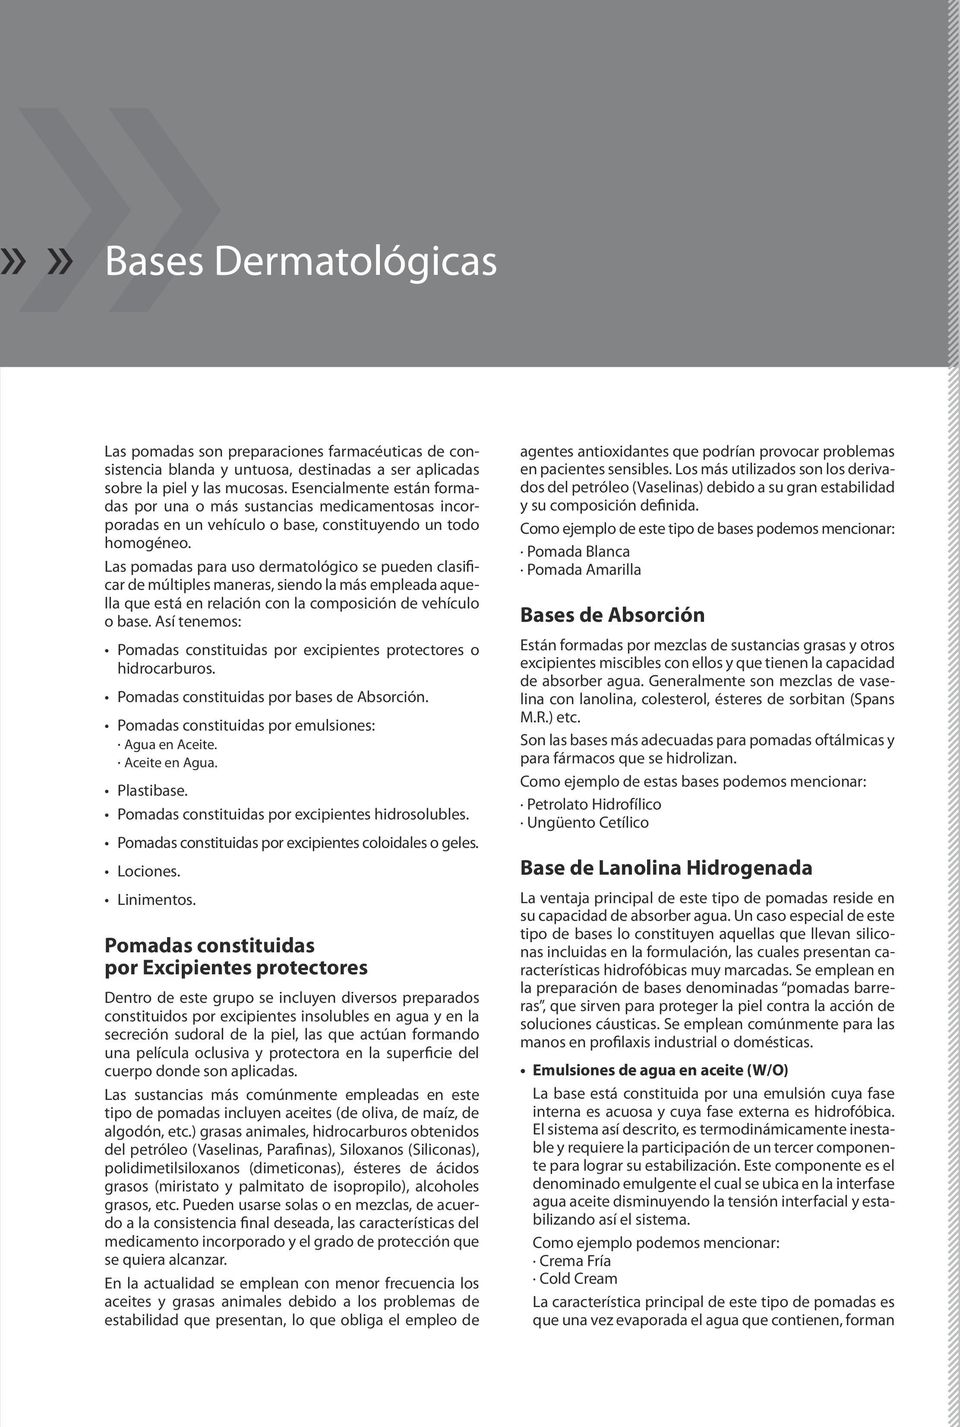 Las pomadas para uso dermatológico se pueden clasificar de múltiples maneras, siendo la más empleada aquella que está en relación con la composición de vehículo o base.